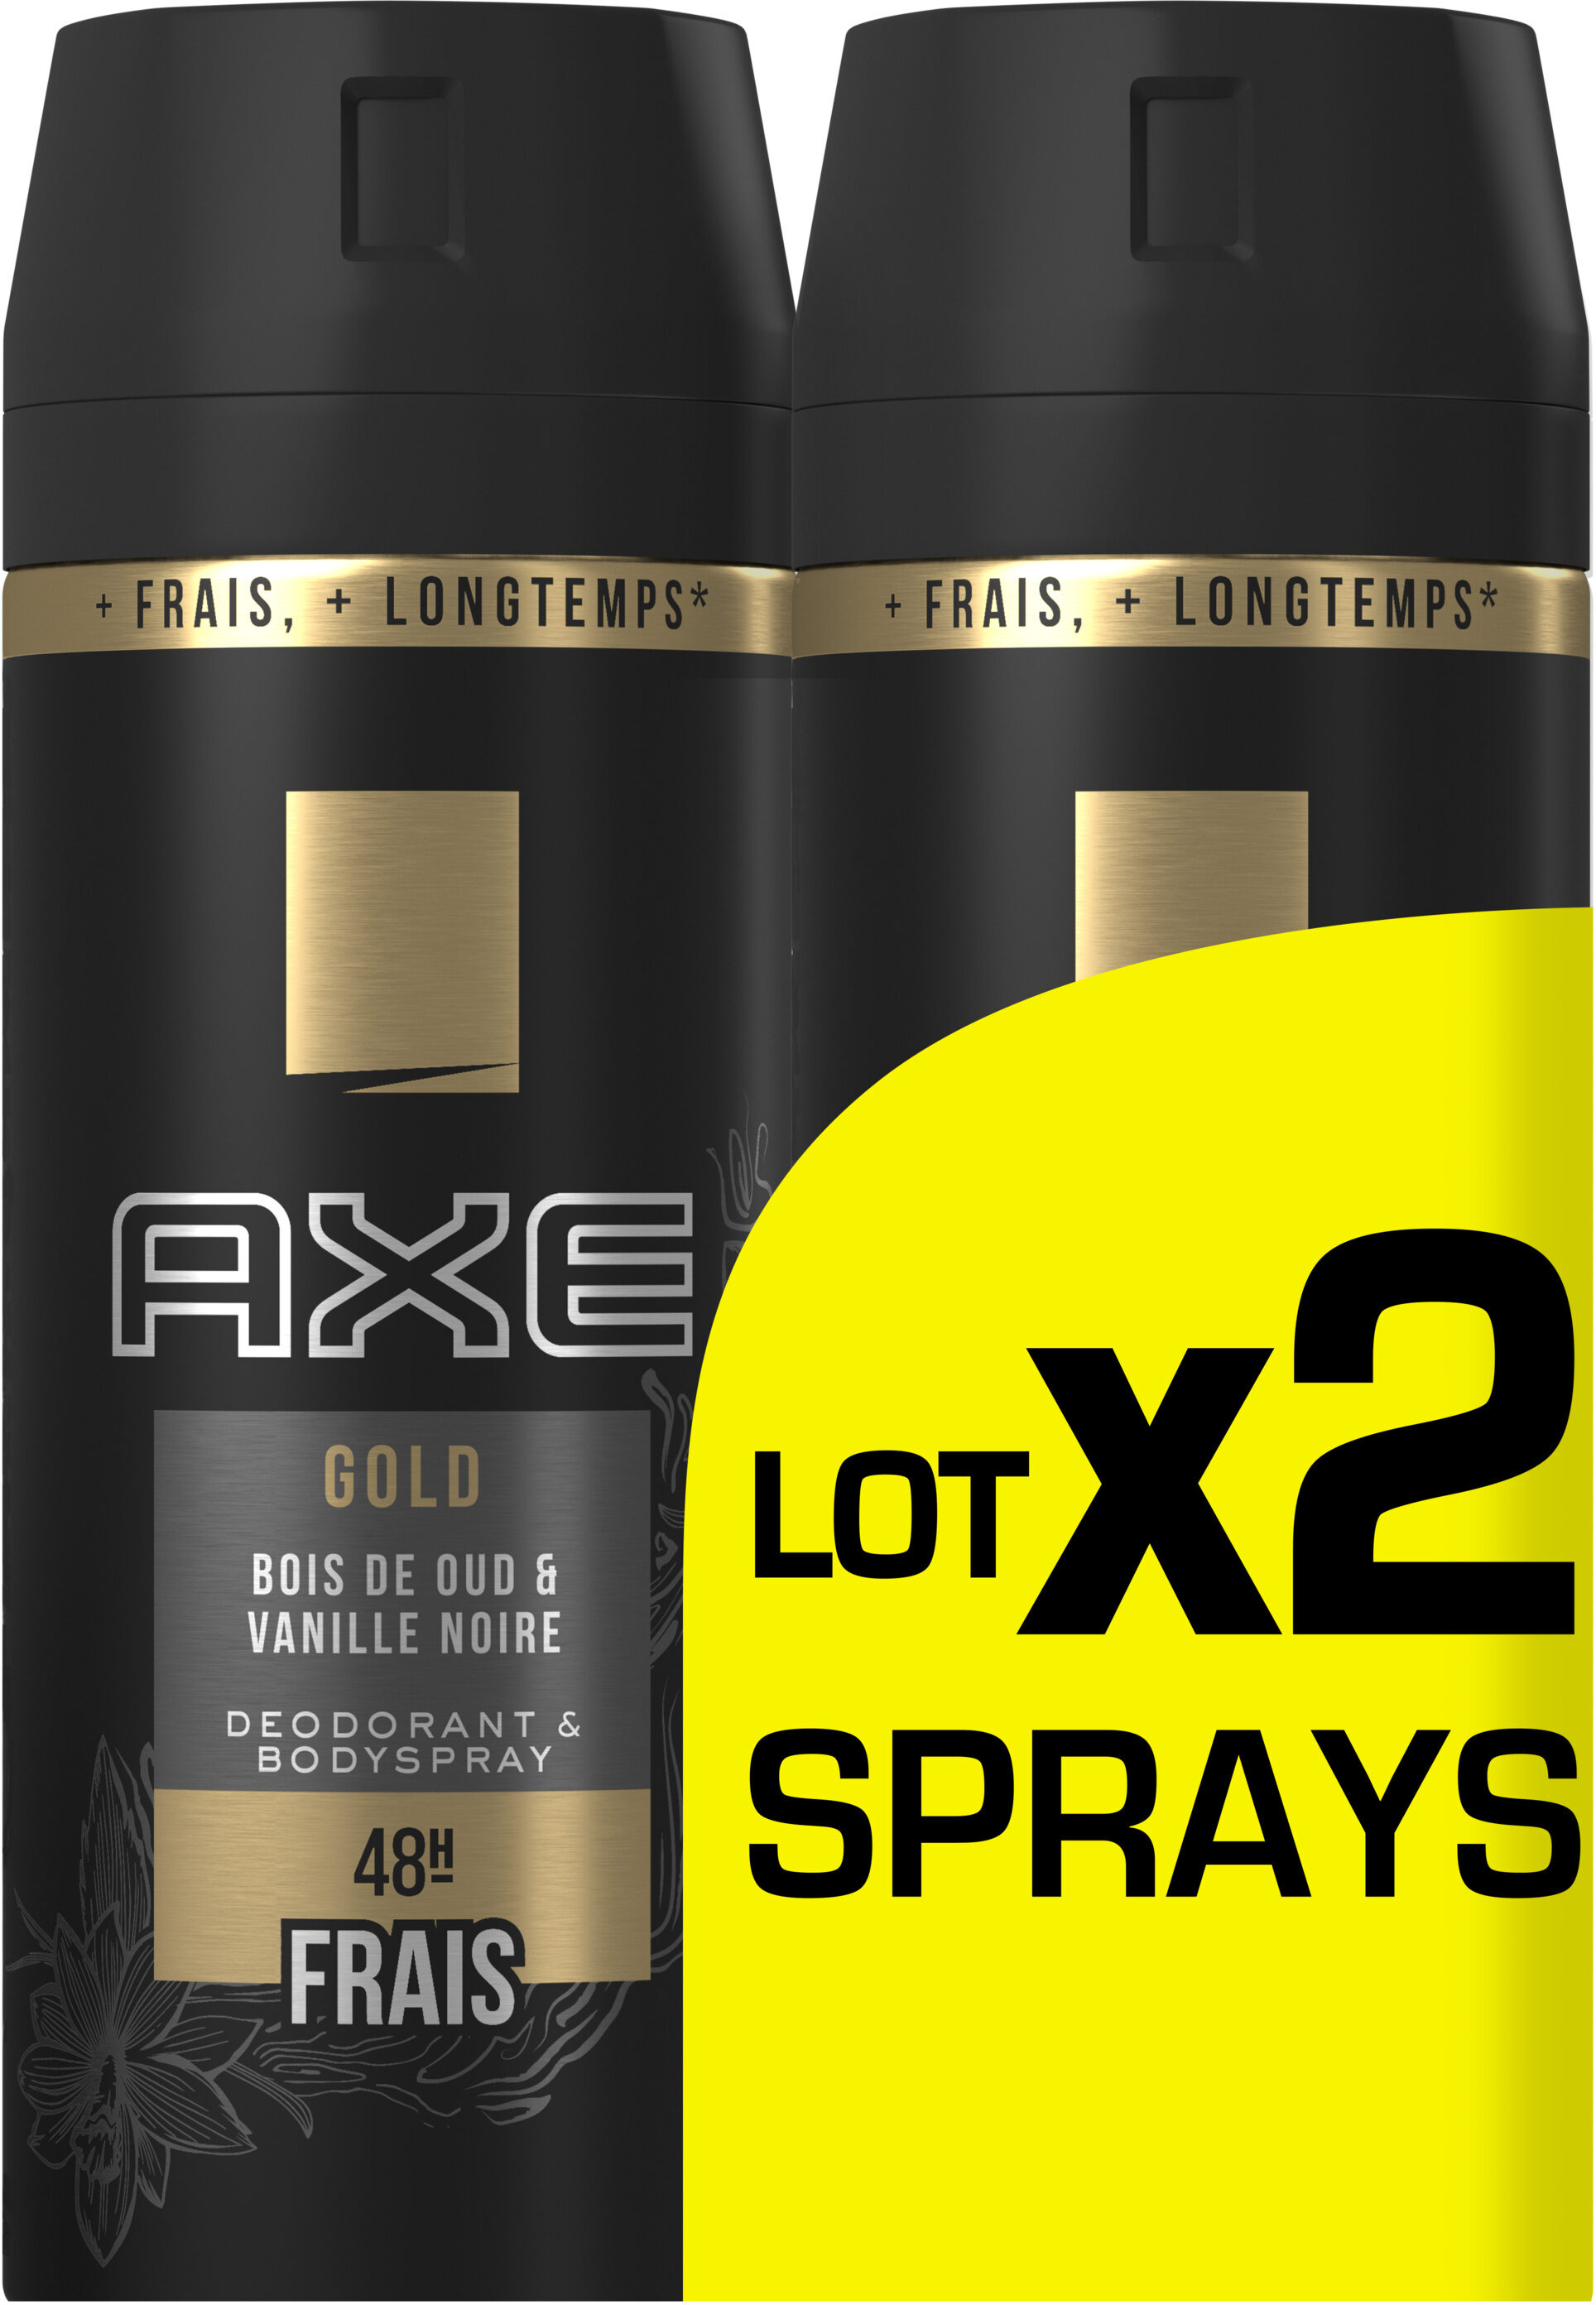 AXE Gold Déodorant Homme Bois de Oud et Vanille Noir 48H Spray Lot 2x150ml - Produit - fr